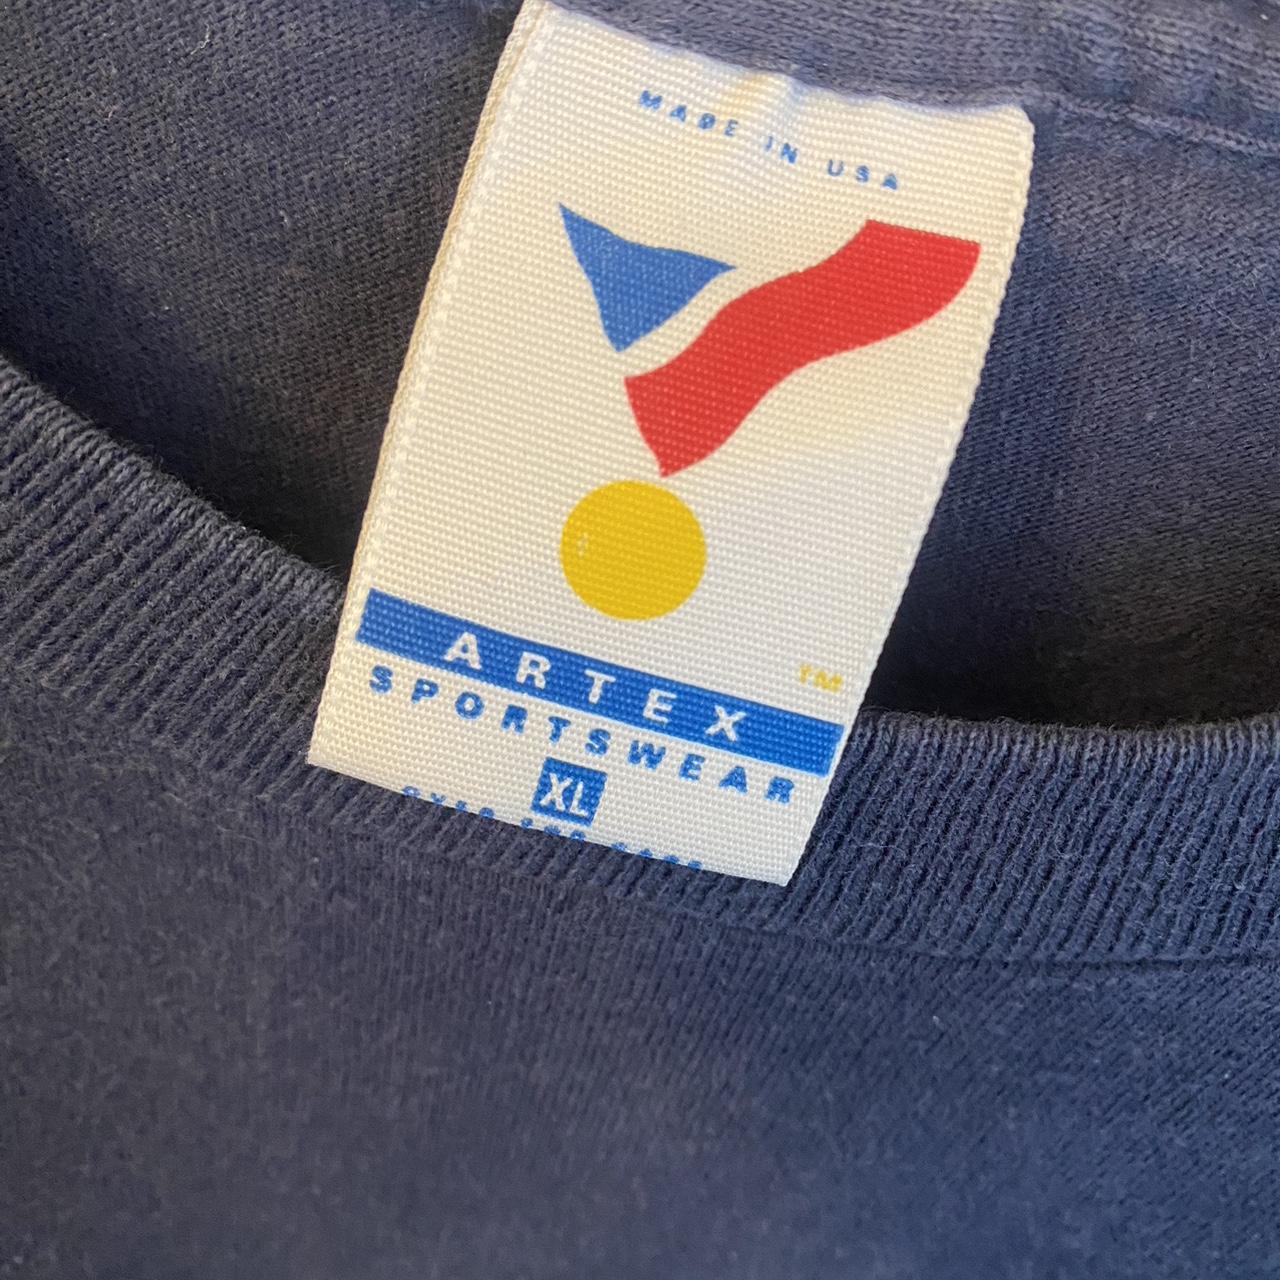 Rare Vintage 90's Artex Sportswear 1993 Dallas - Depop